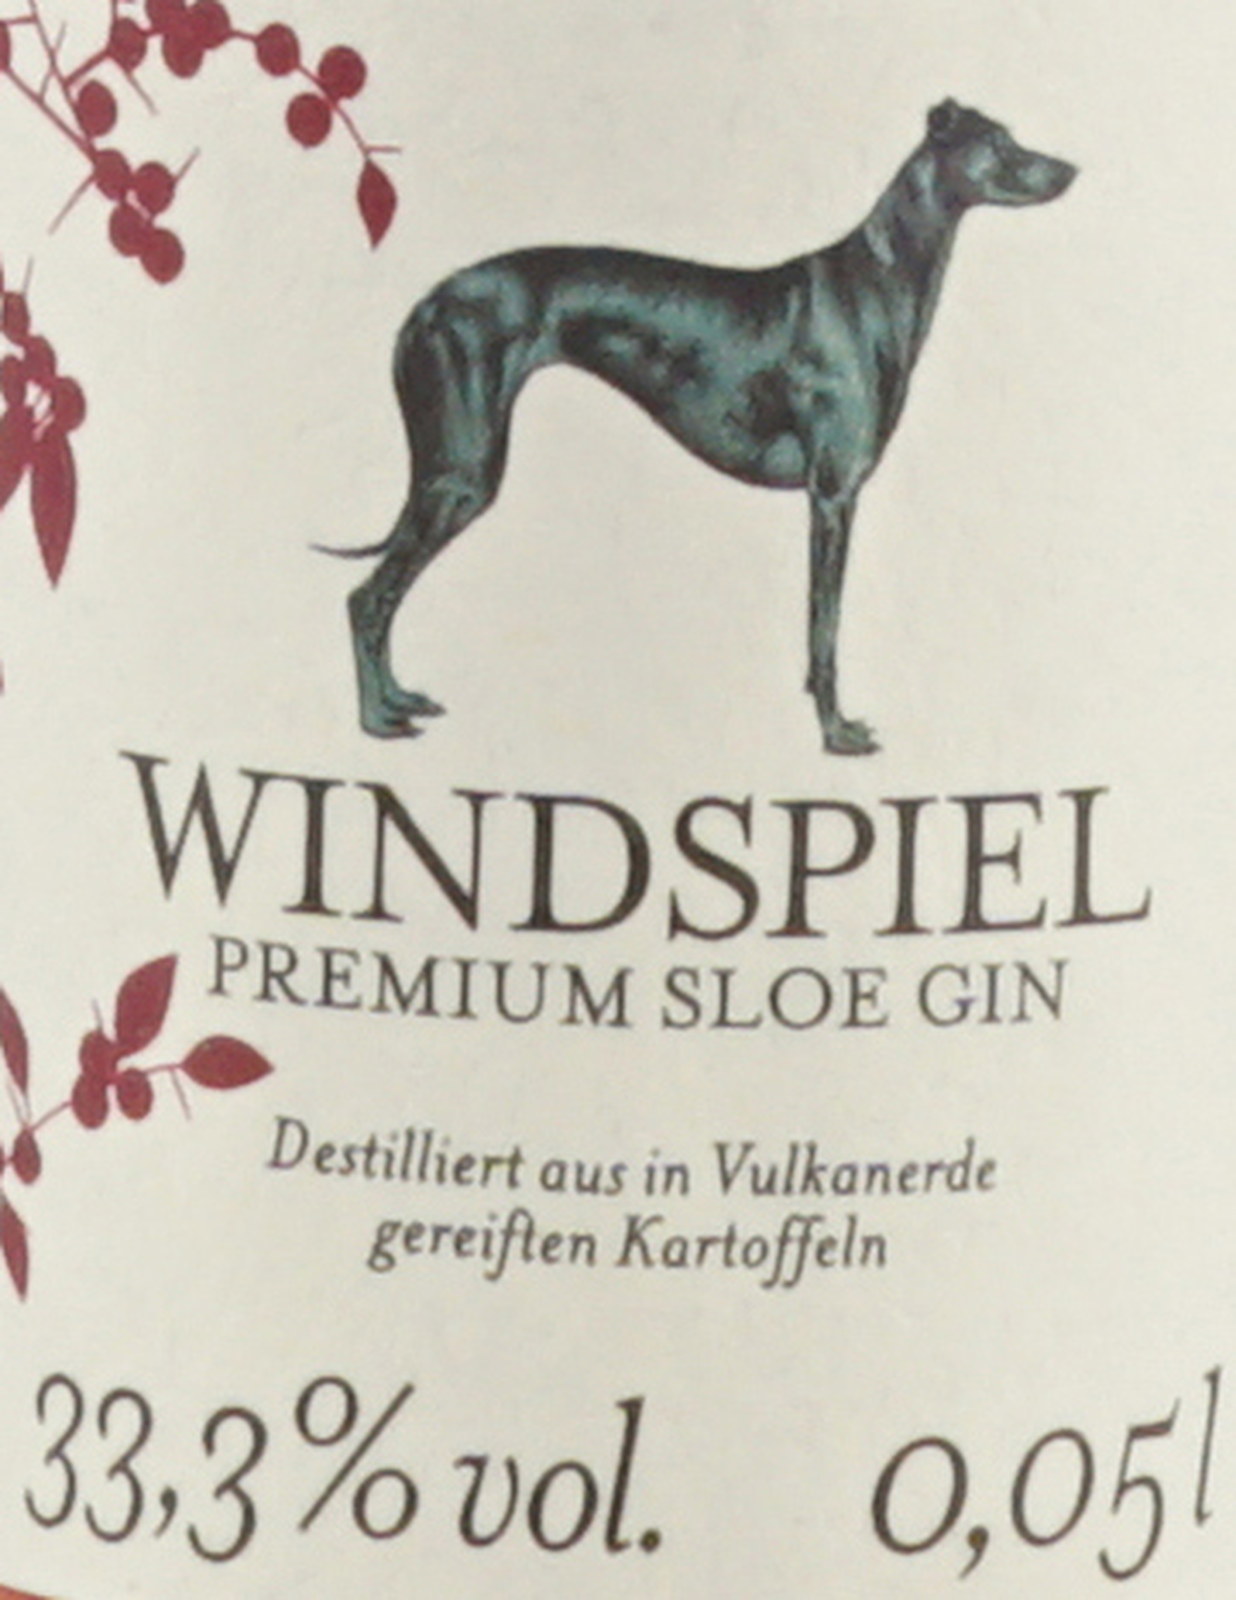 Windspiel Premium Sloe Gin 0,05 Liter 33,3 %